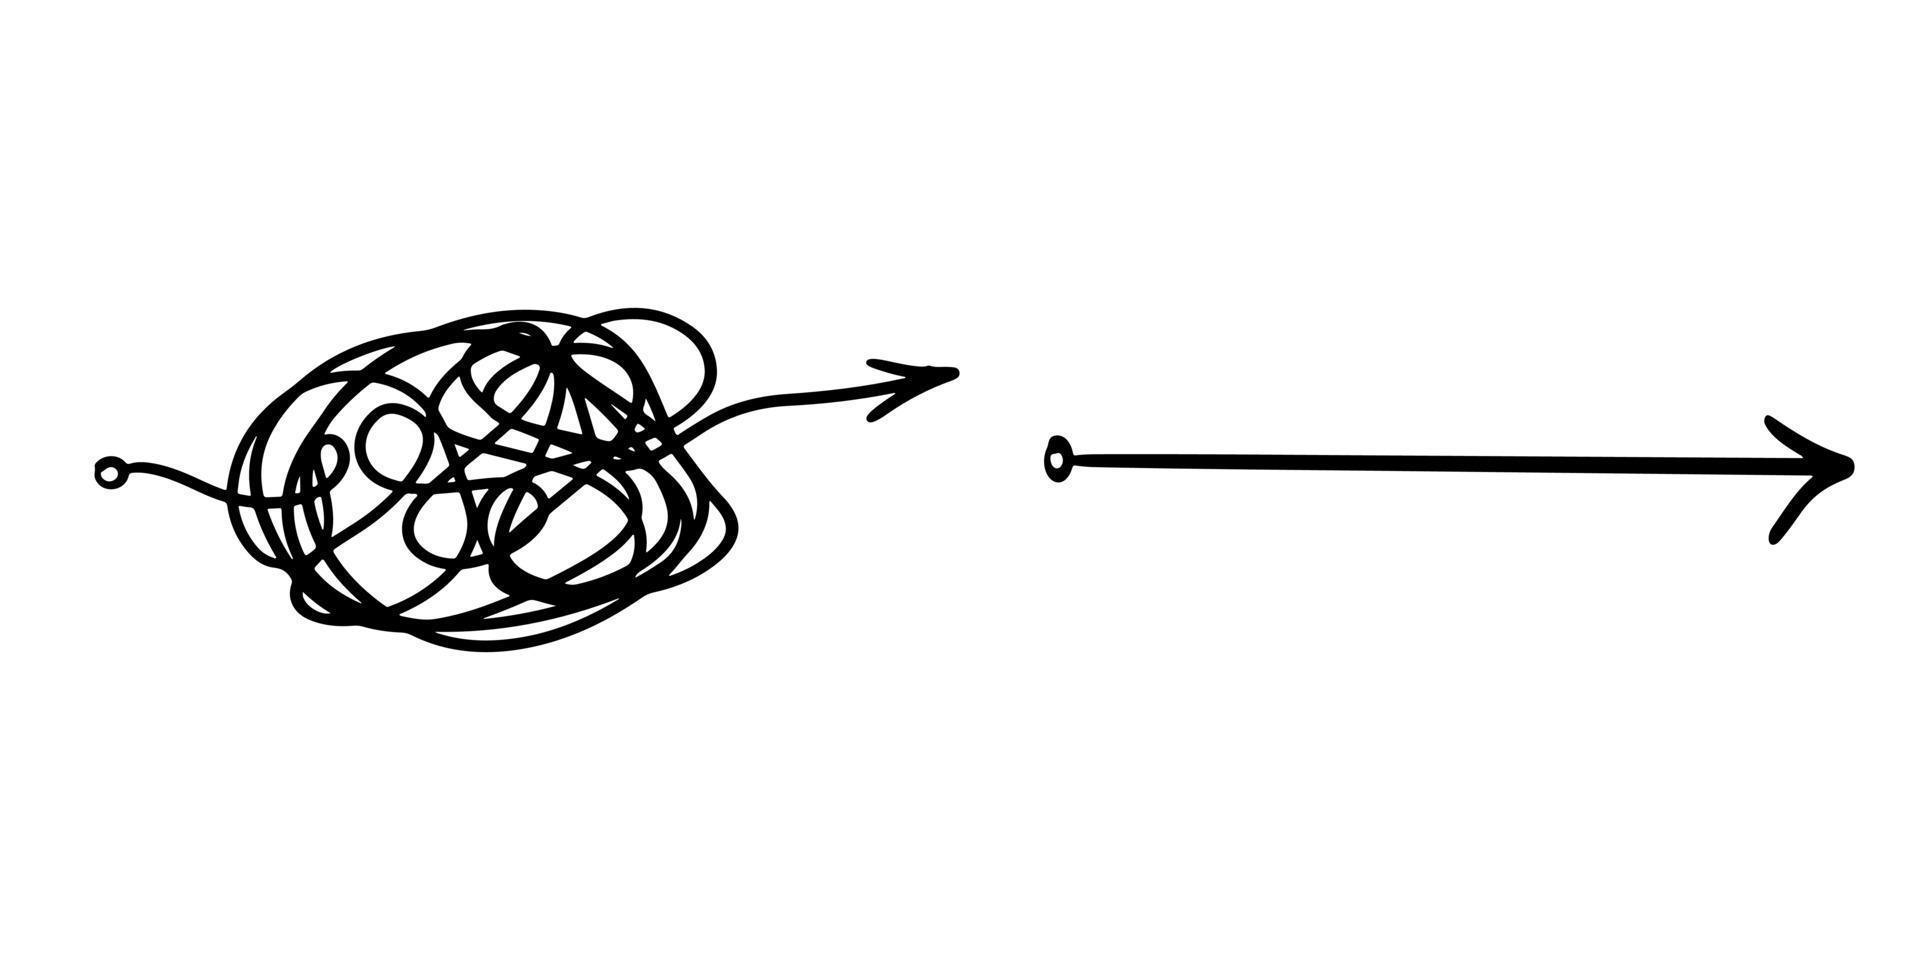 claridad de confusión o concepto de idea de vector de ruta. simplificando lo complejo. ilustración vectorial de garabatos.